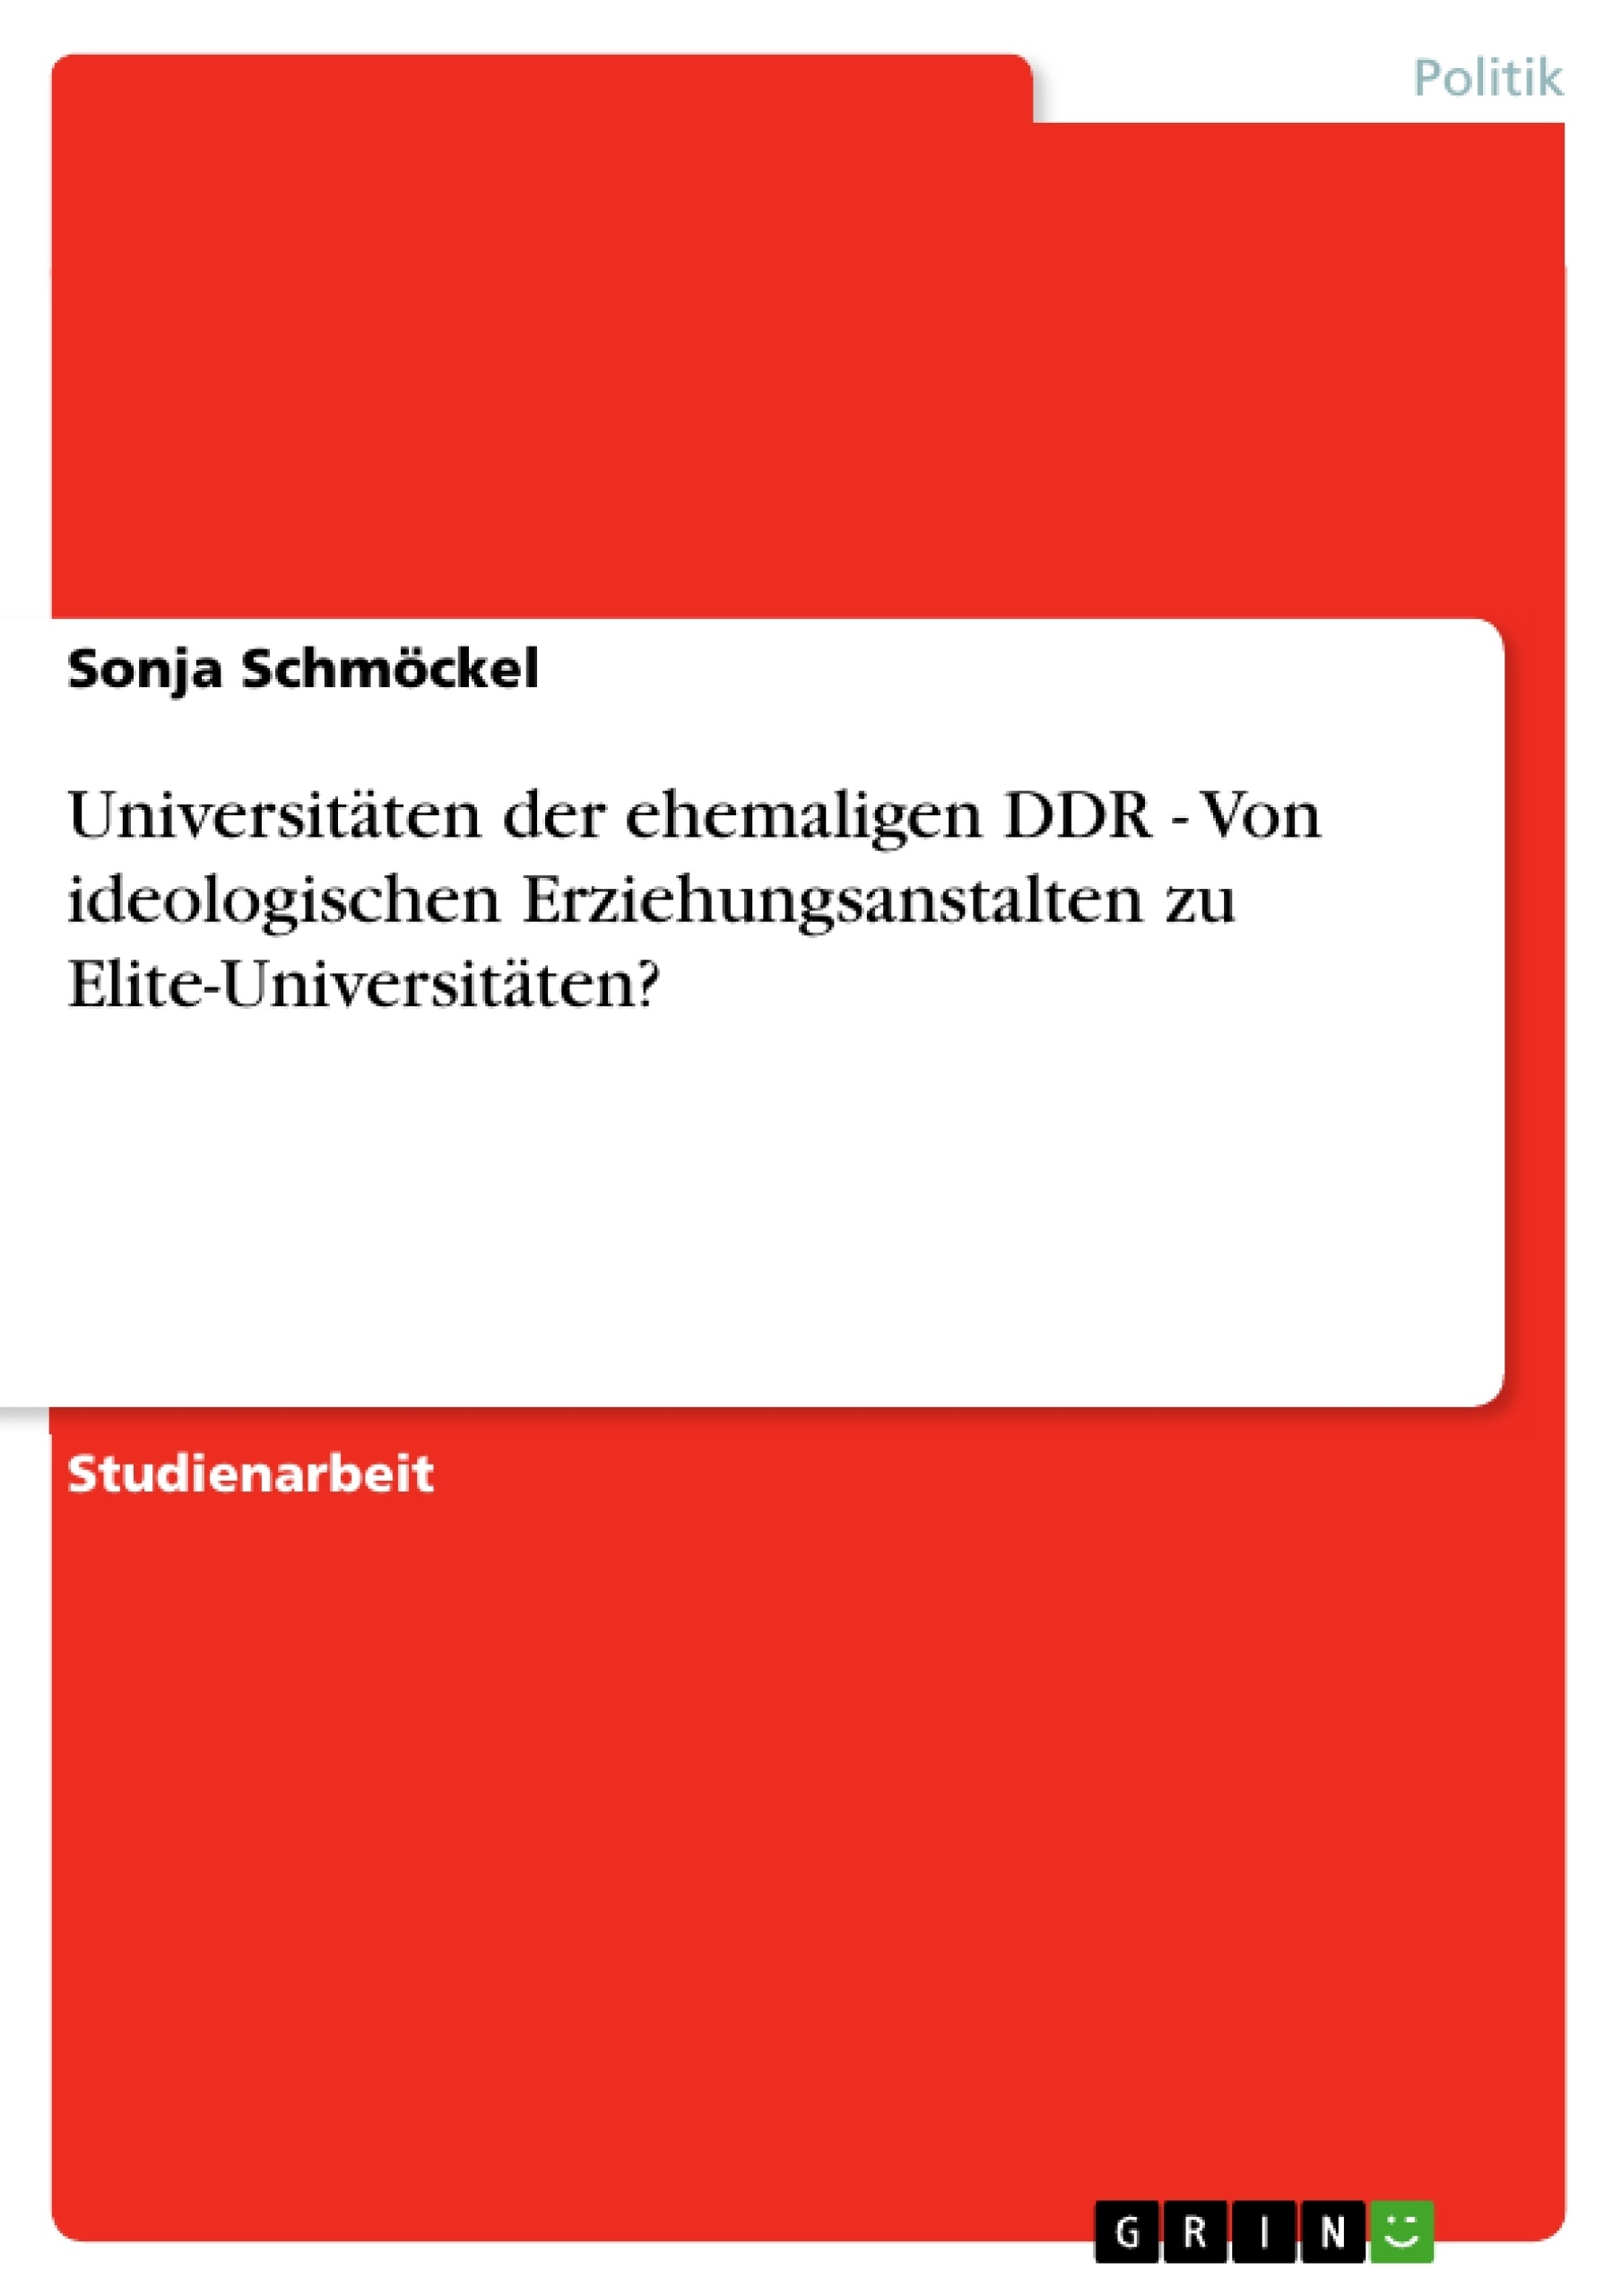 Título: Universitäten der ehemaligen DDR - Von ideologischen Erziehungsanstalten zu Elite-Universitäten?